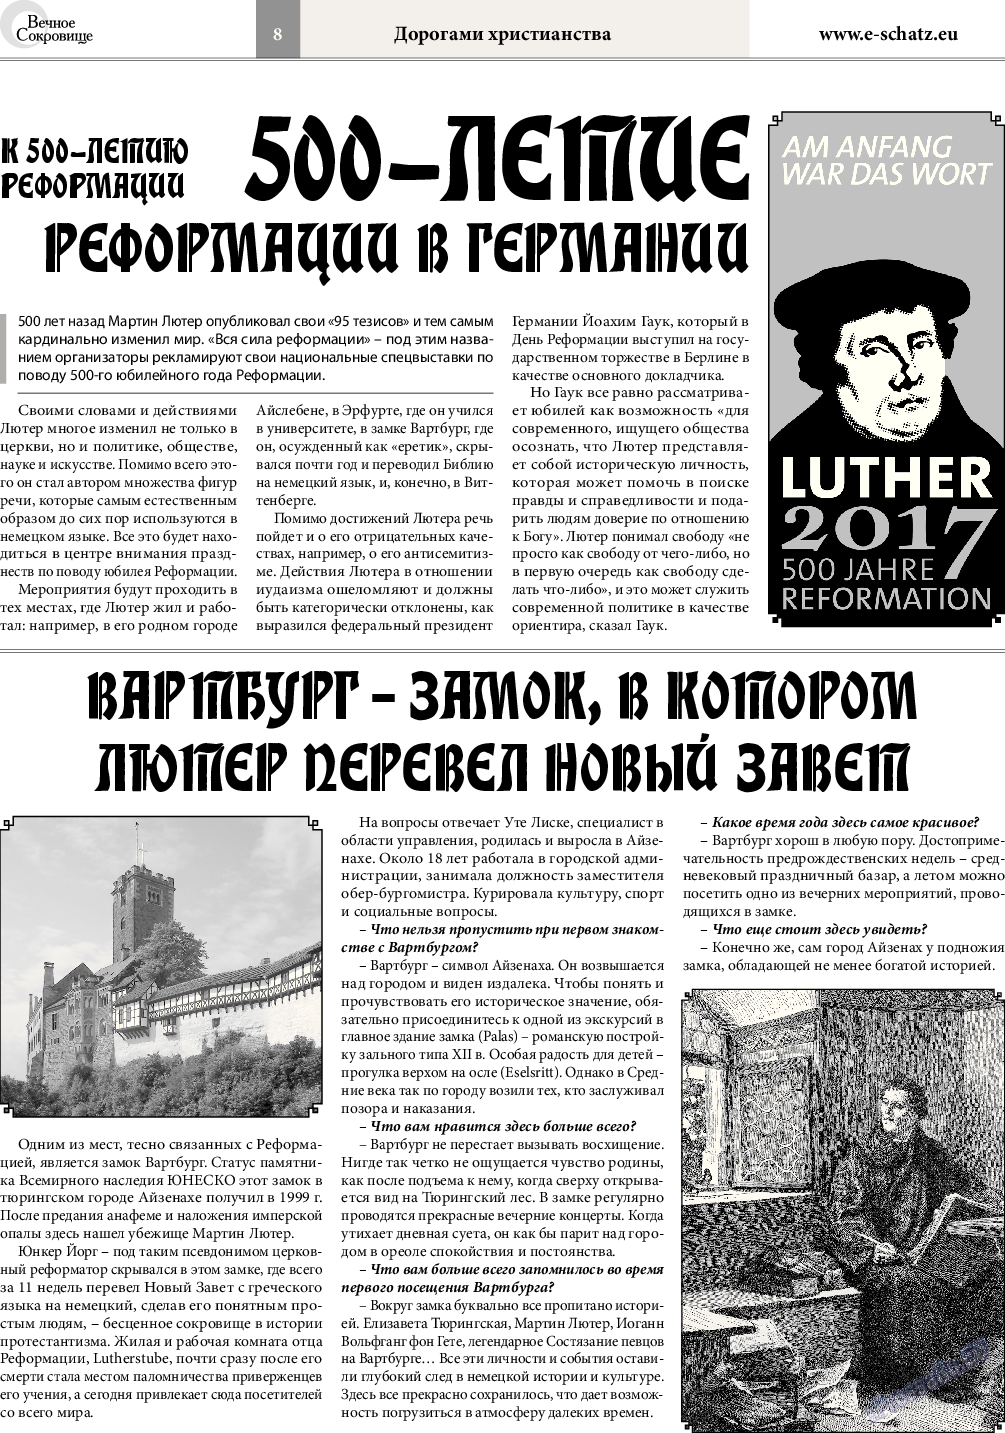 Вечное сокровище, газета. 2016 №6 стр.8